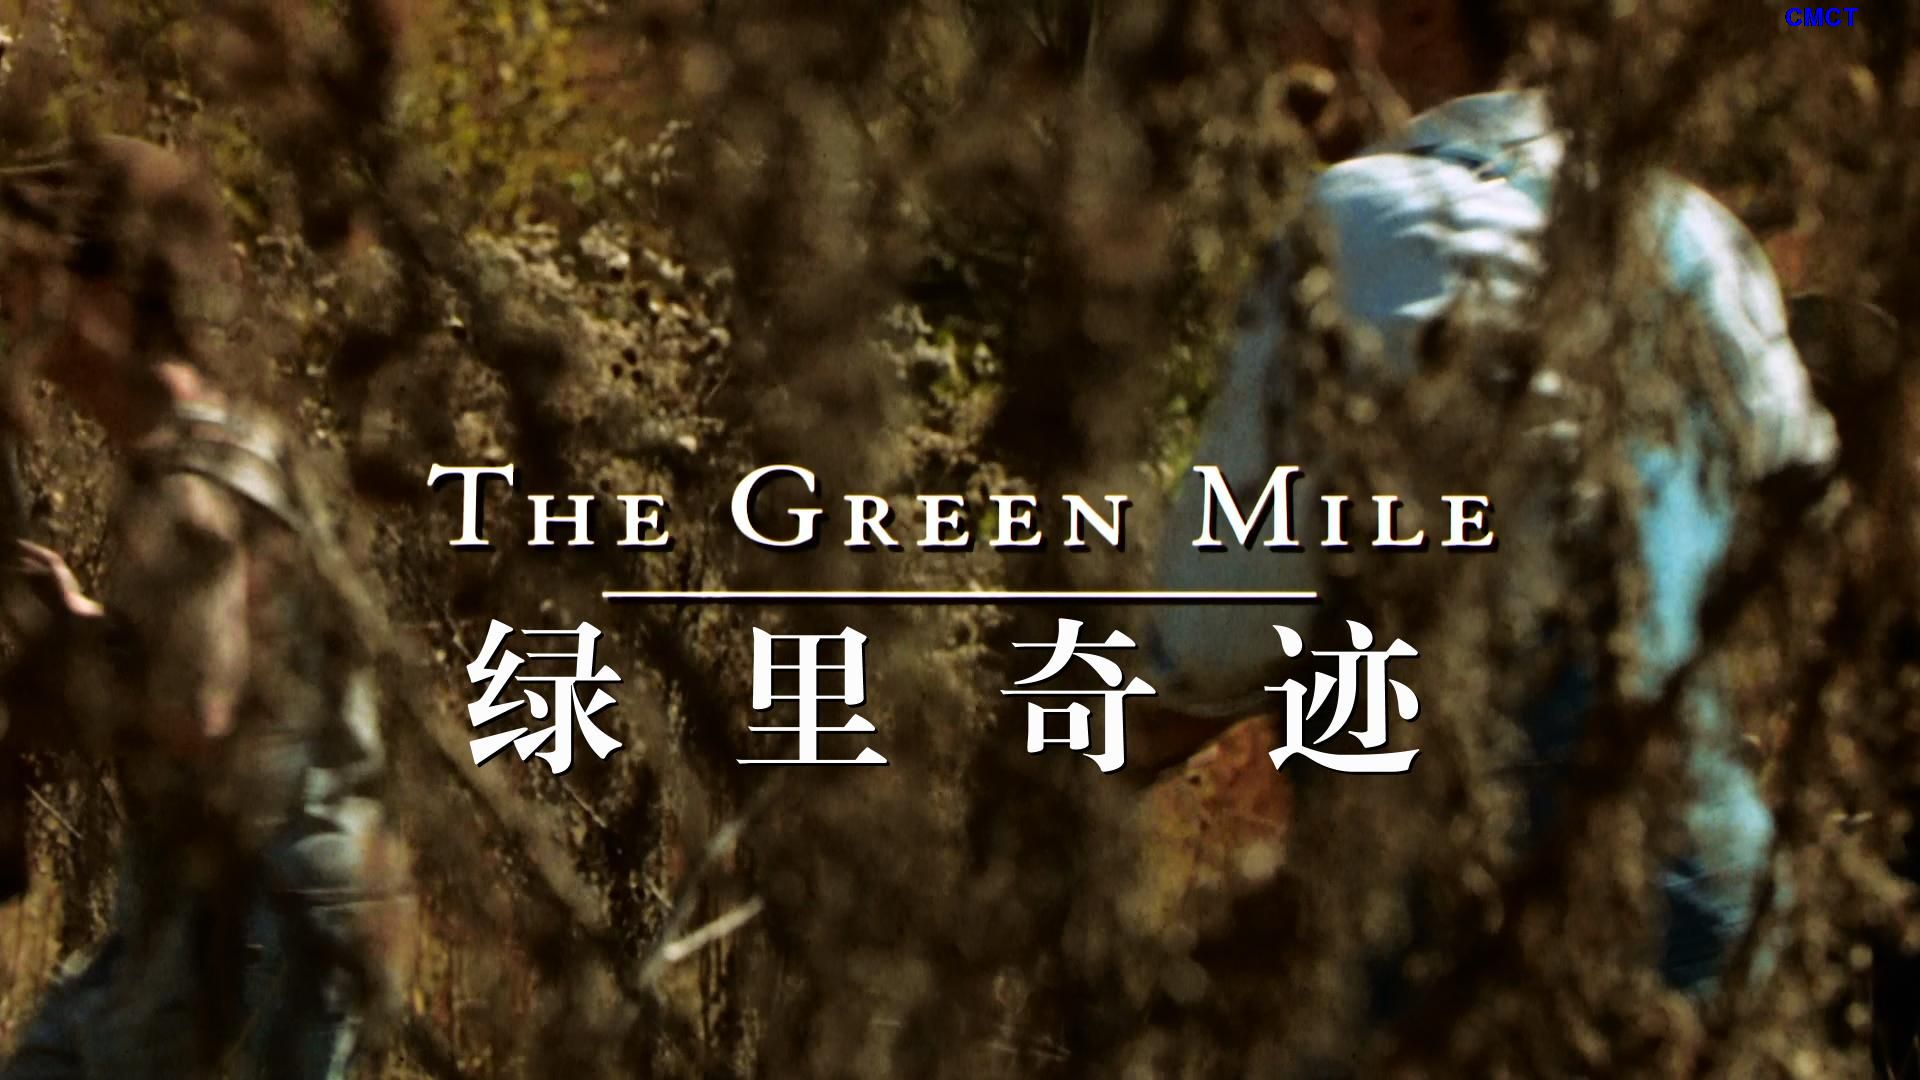 绿里奇迹  [原盘DIY] [六区国语] [简/繁/英/双语特效字幕] Top 250 # 45 The.Green.Mile.1999.Blu-ray.1080p.VC-1.TrueHD5.1-CMCT    [40.95 GB ]-2.jpg